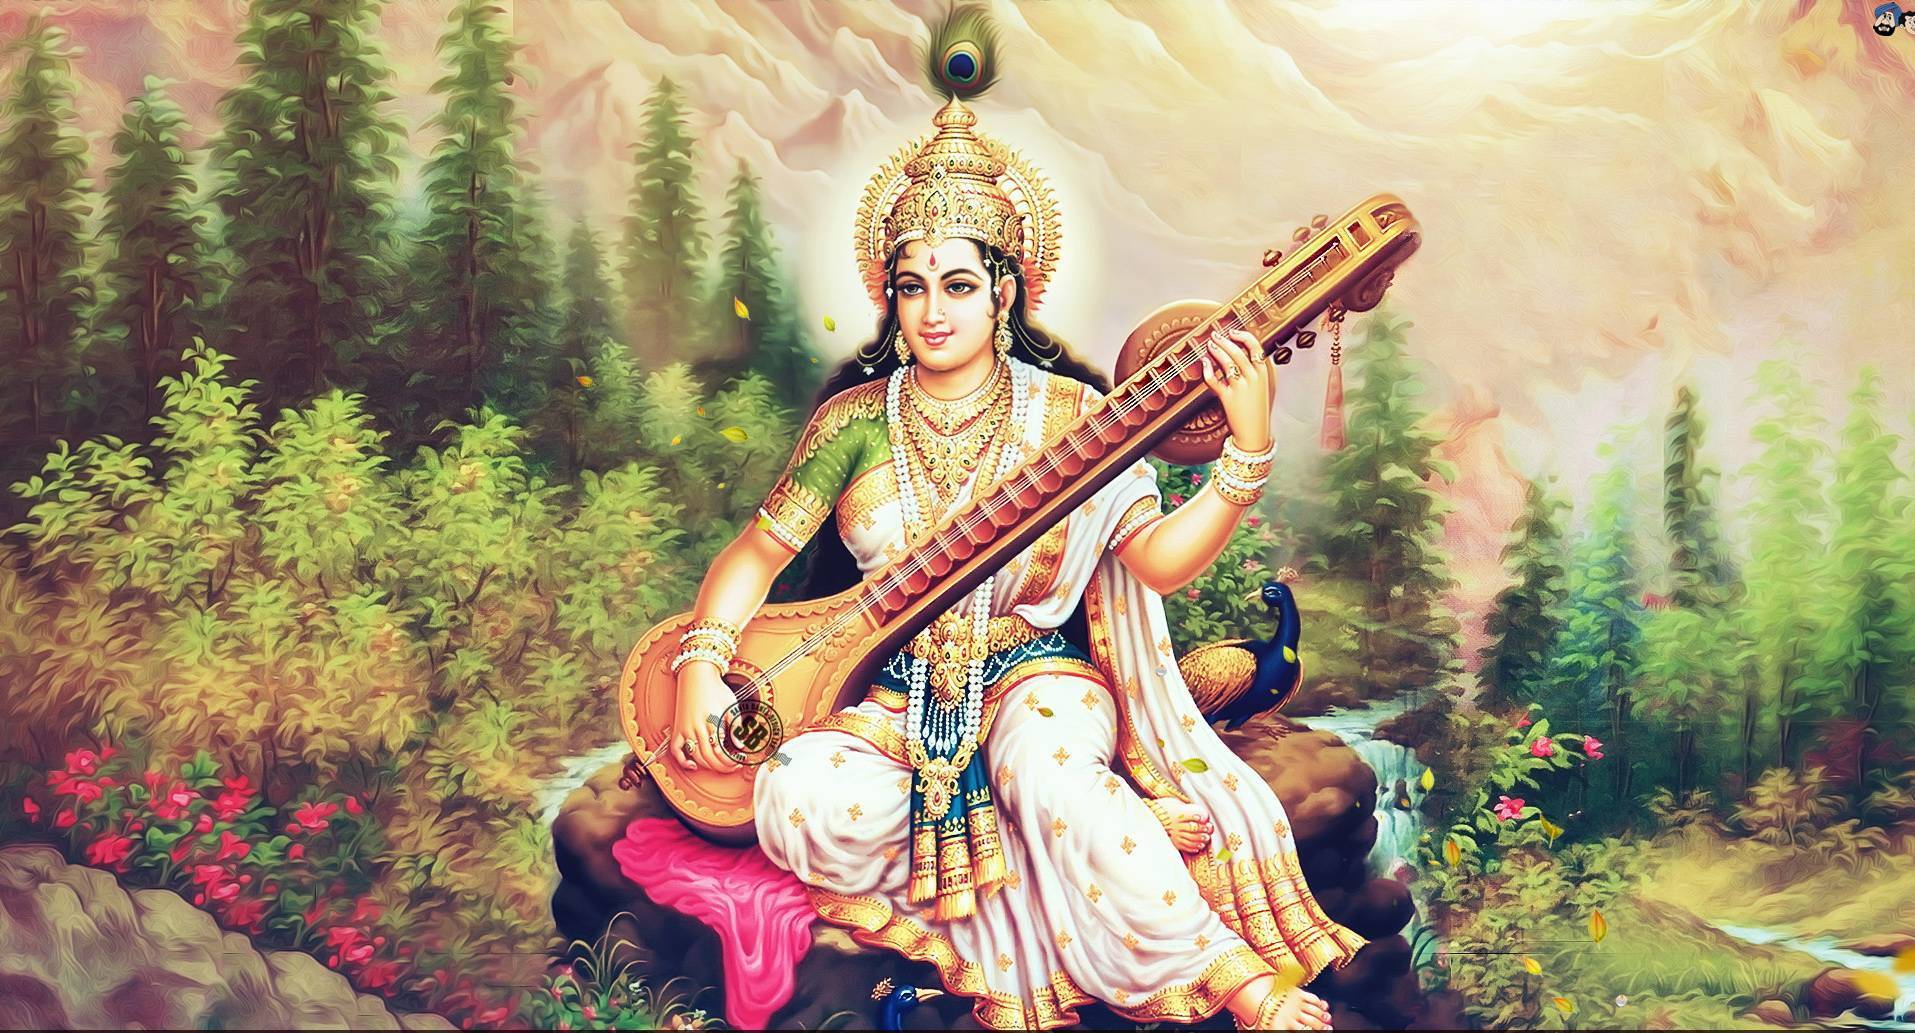 Прекрасная богиня мудрости, знаний, искусства и красоты – Сарасвати